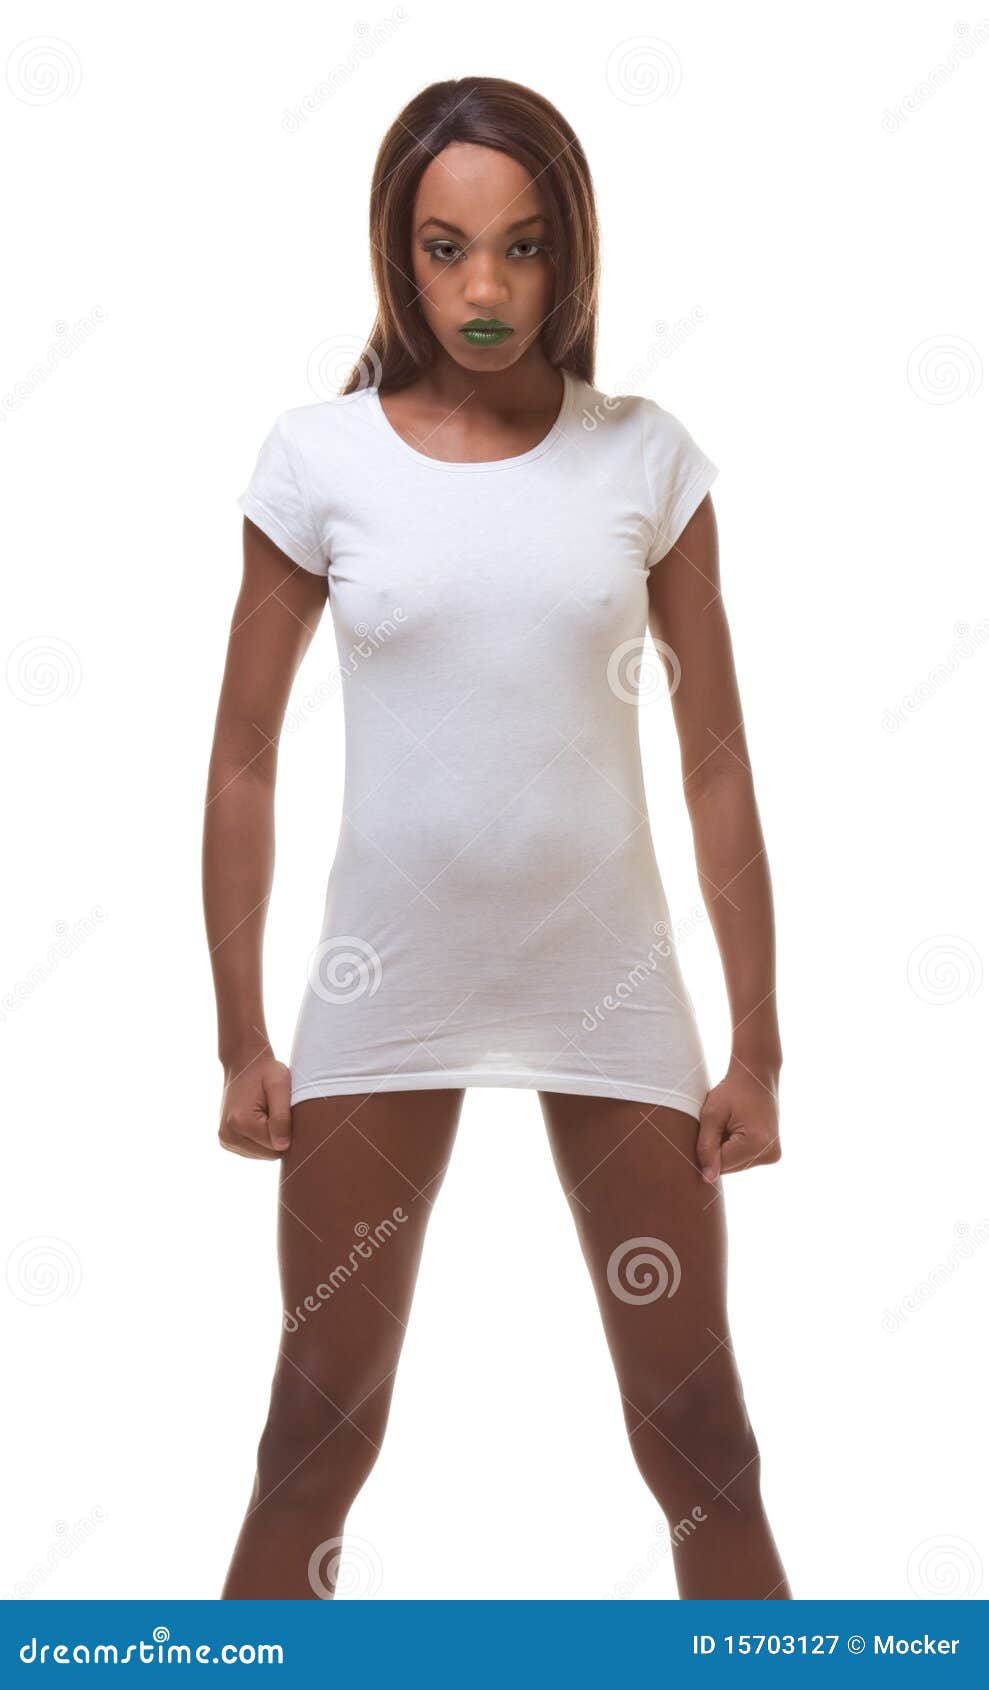 Black Naked Woman in White T-shirt, Slender Legs Stock Image